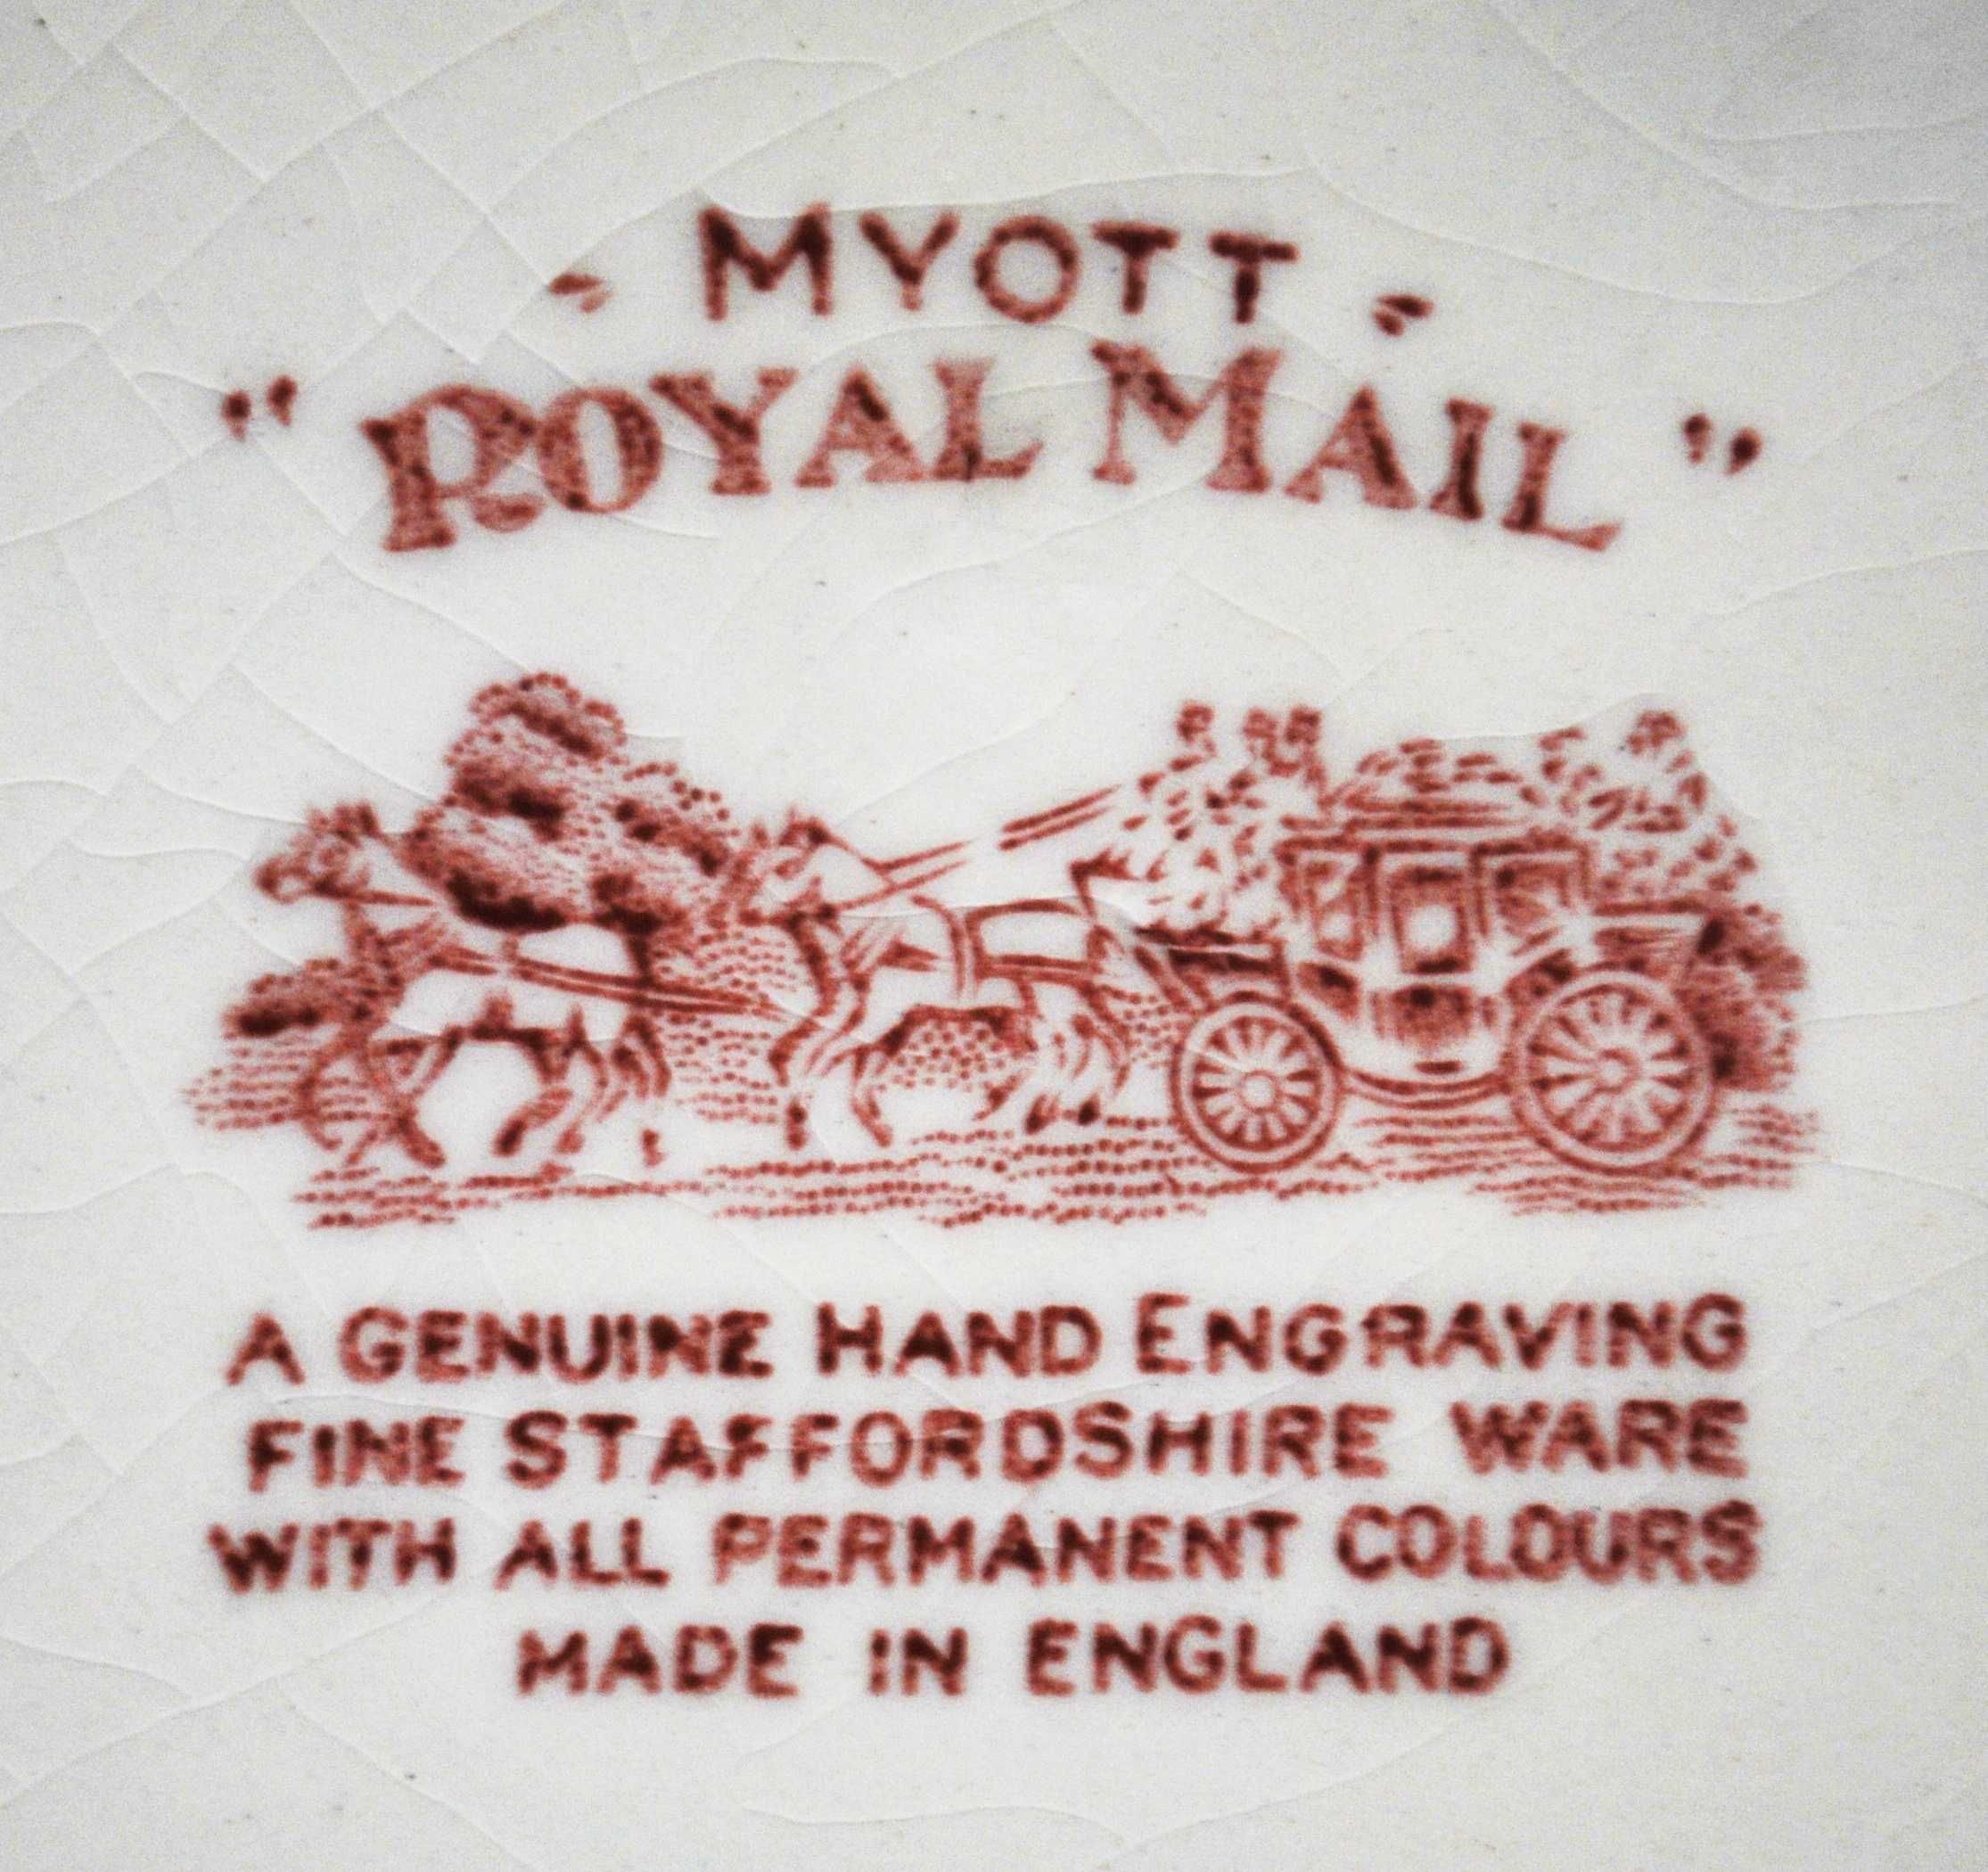 Serviços de chá e de café Myott – Royal Mail – 45 peças